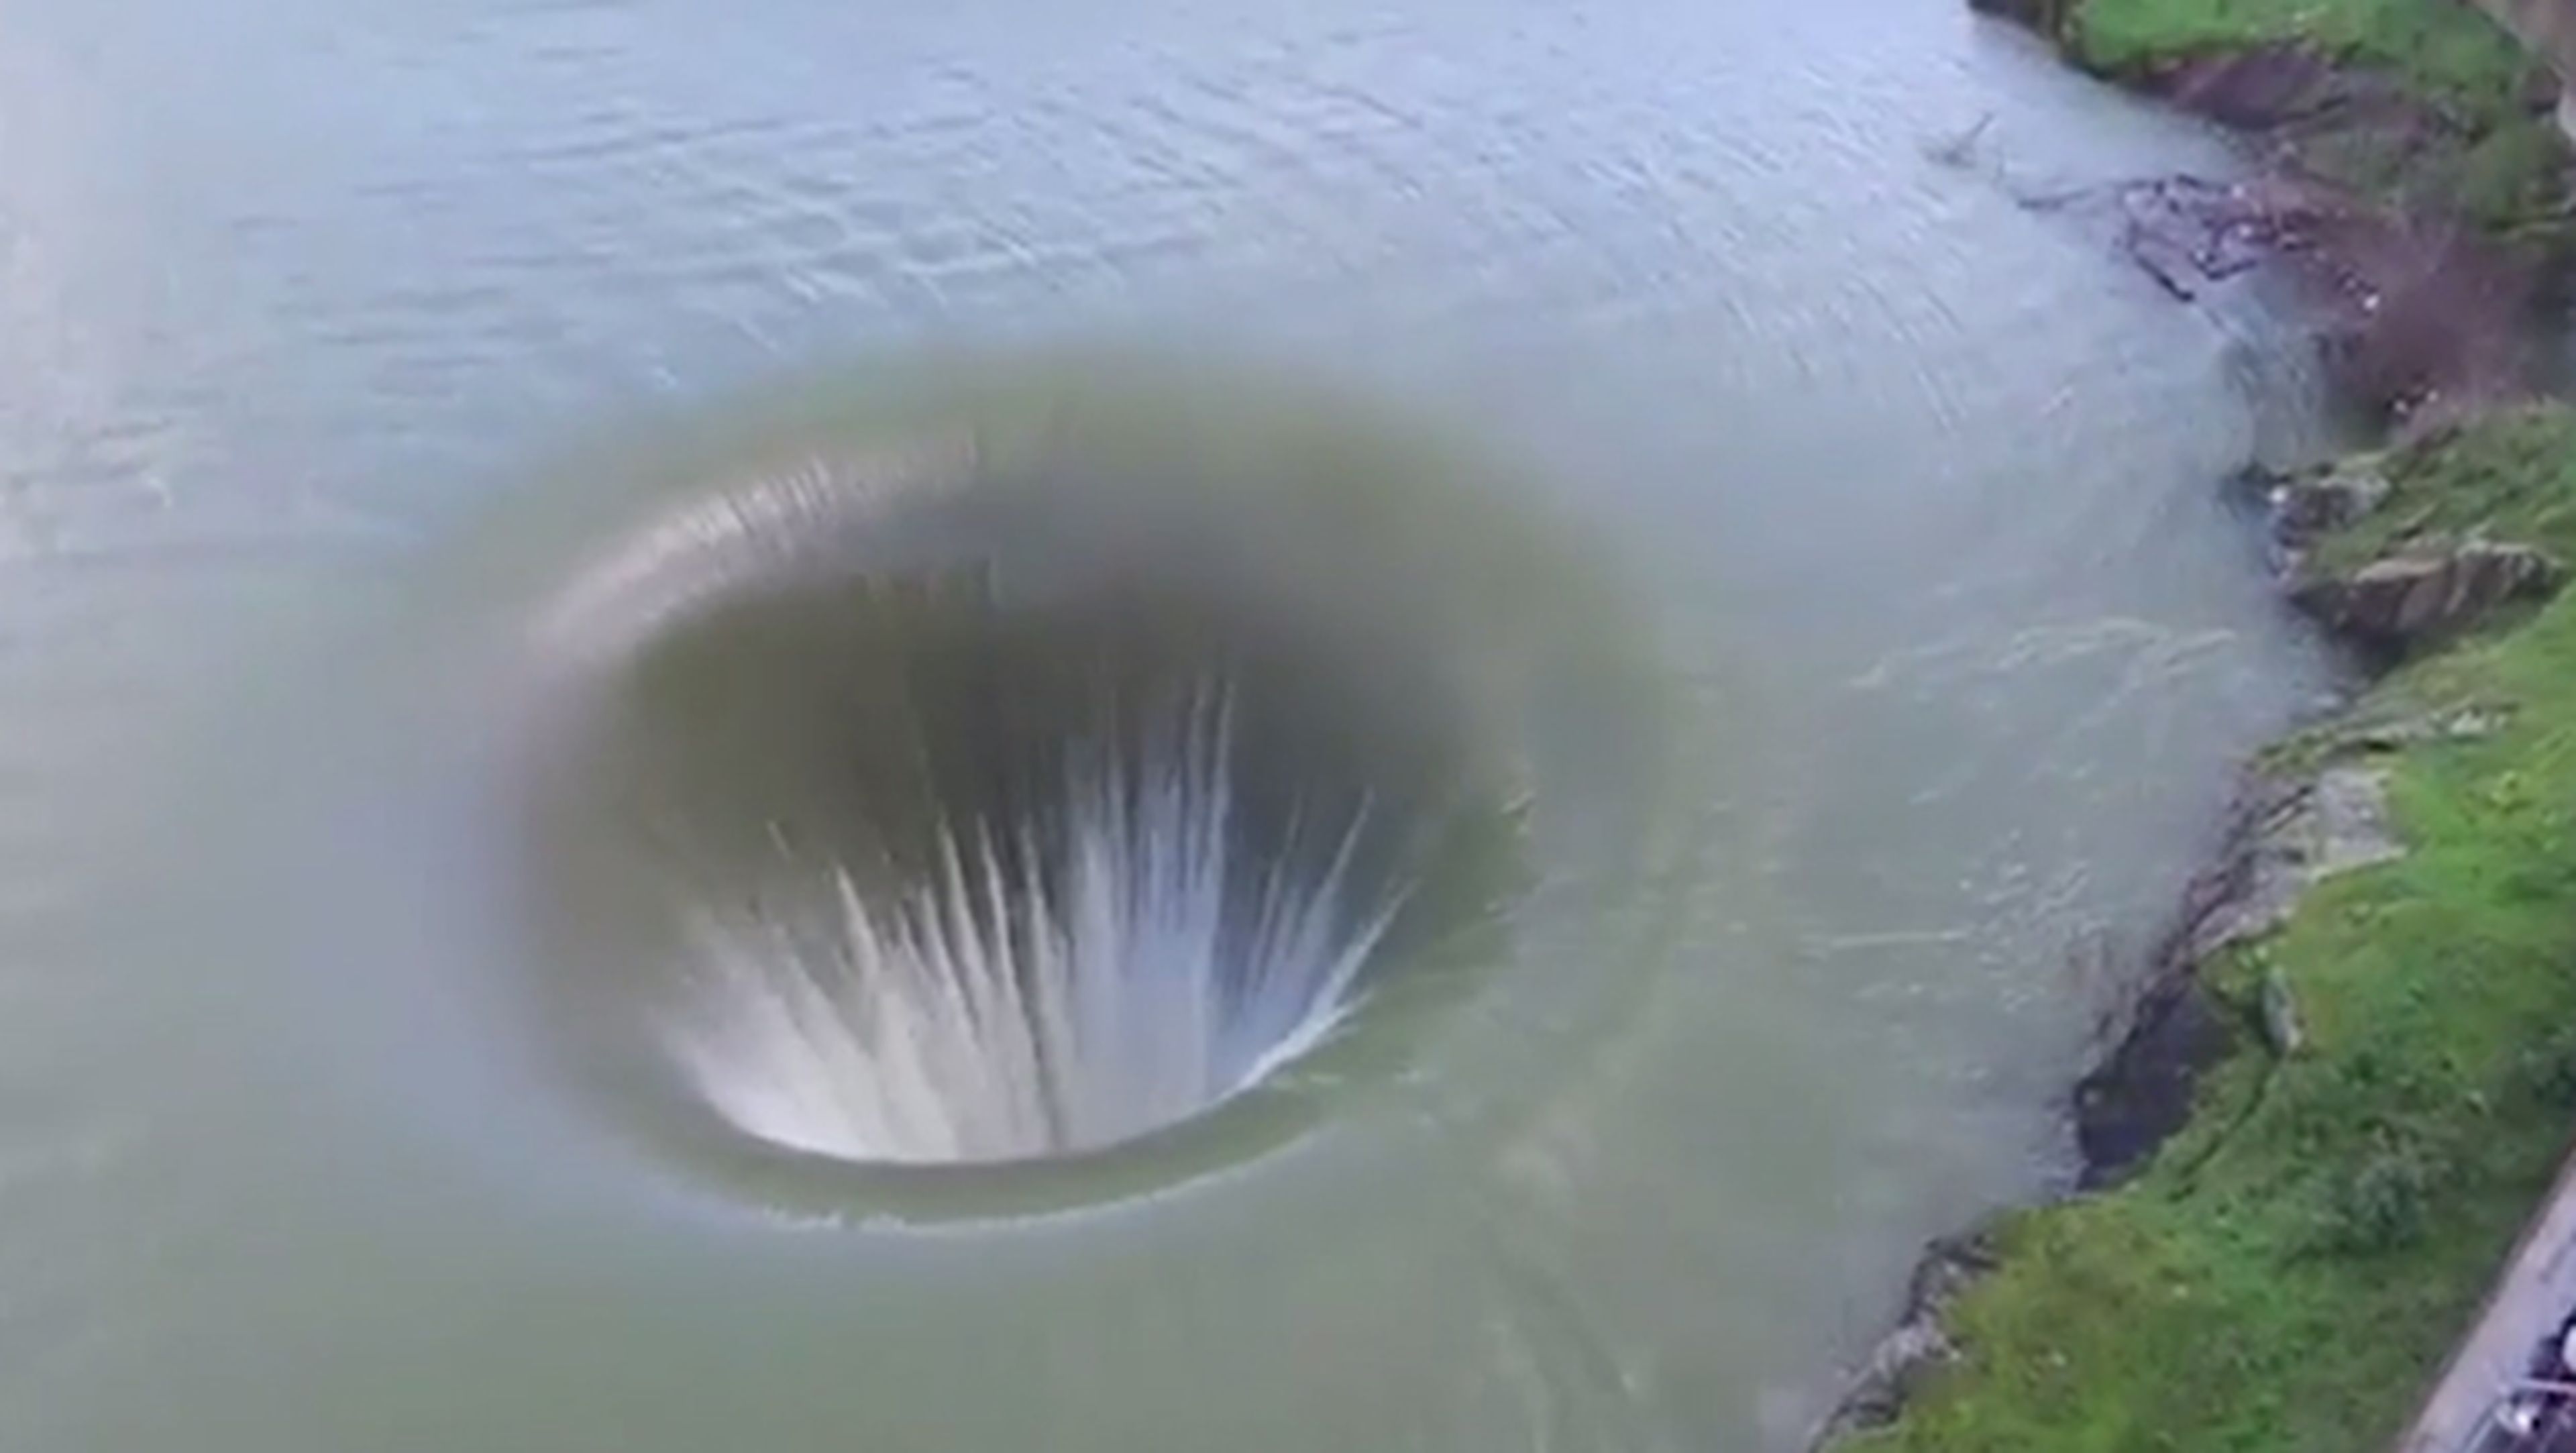 Este enorme agujero en un lago parece inexplicable